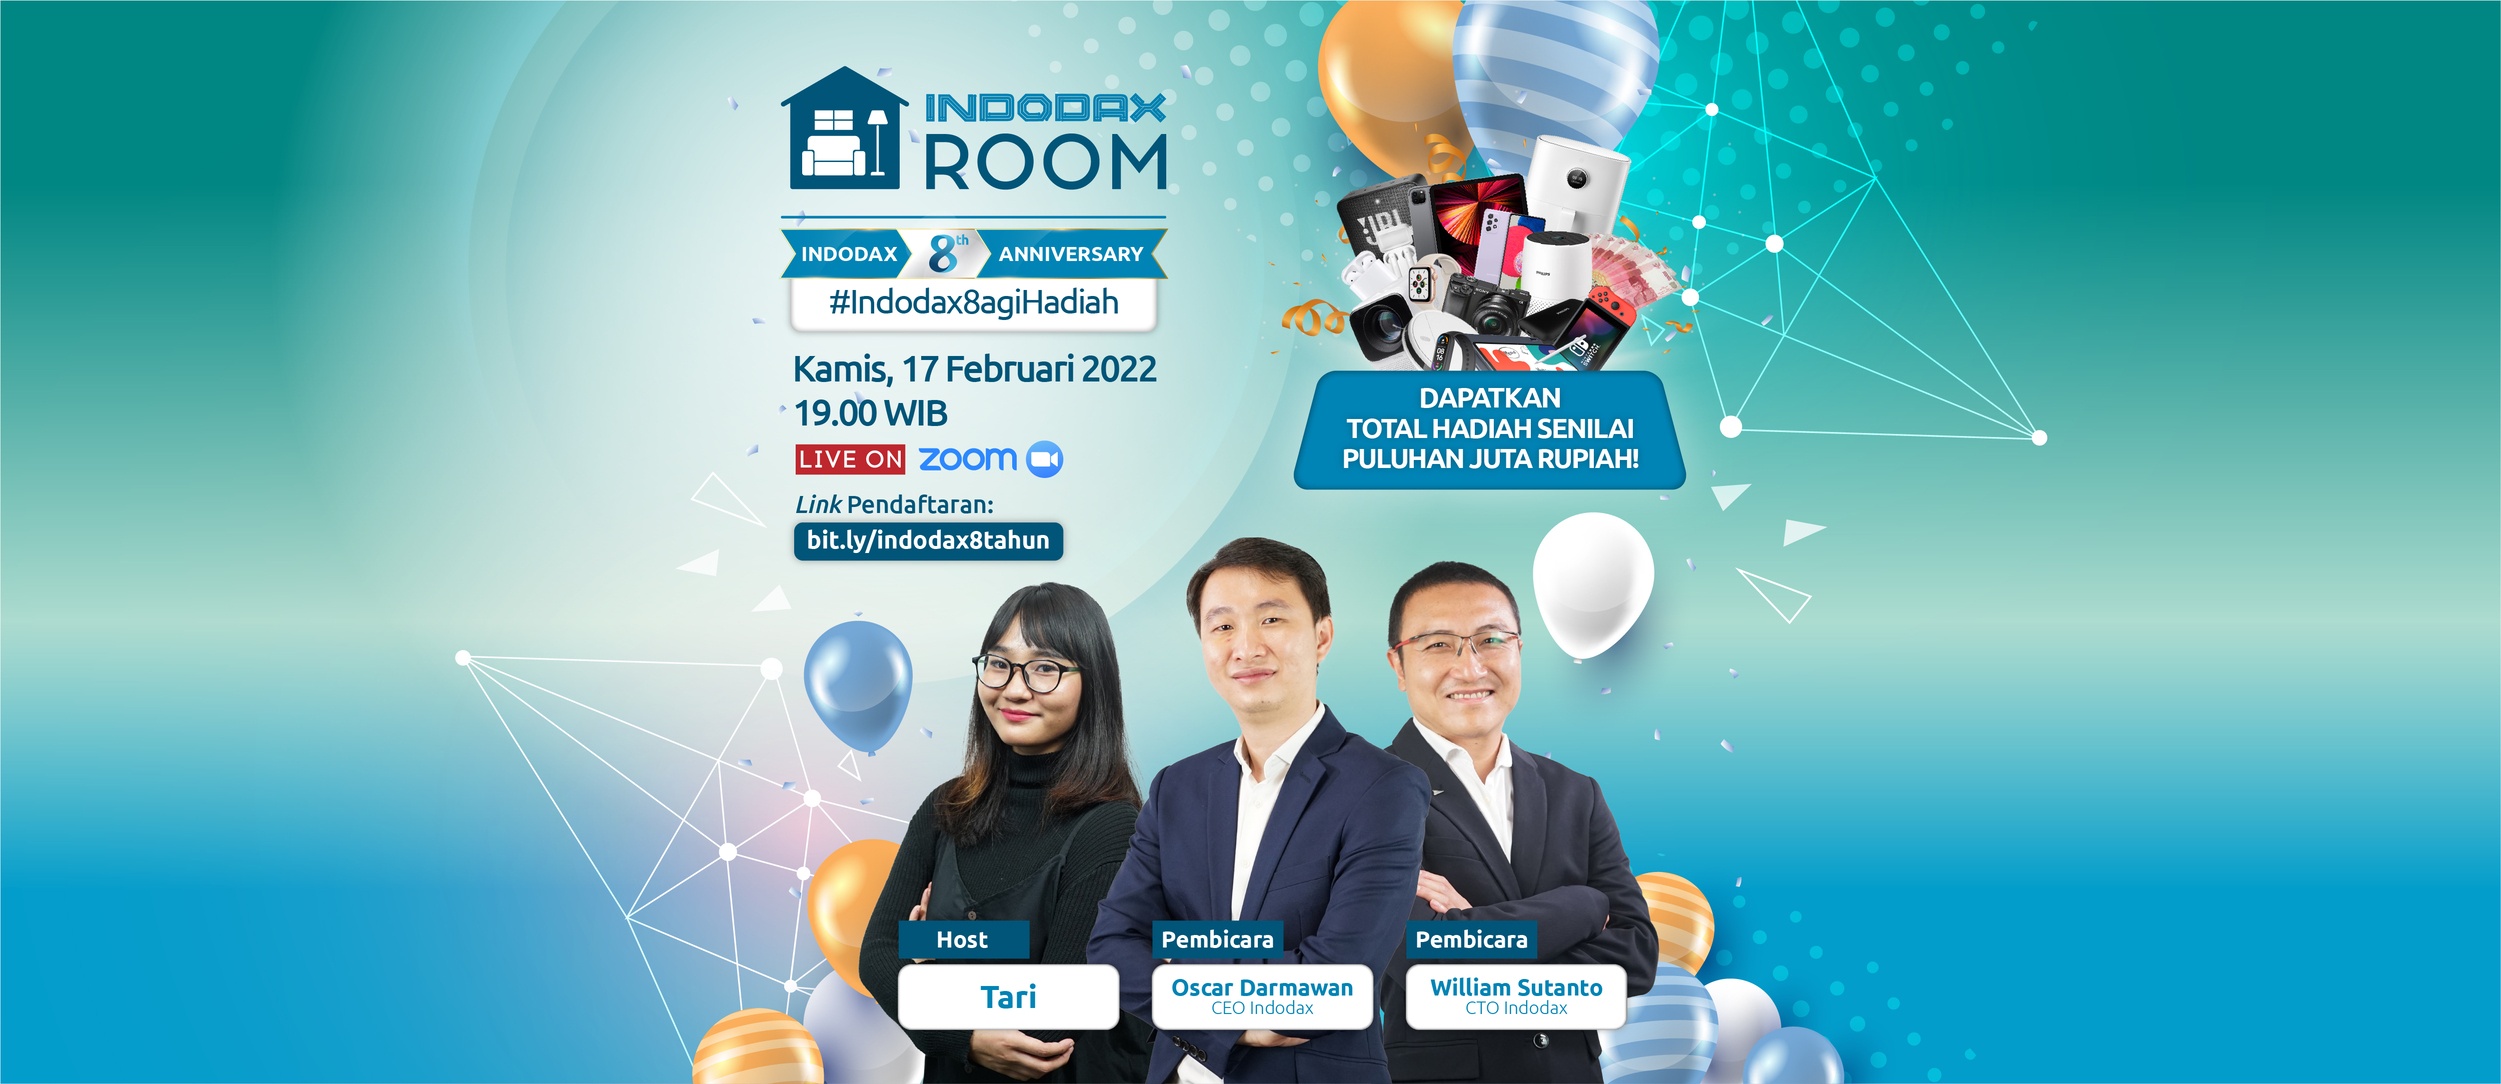 Indodax Room Special Edition: Indodax 8th Anniversary #Indodax8agiHadiah